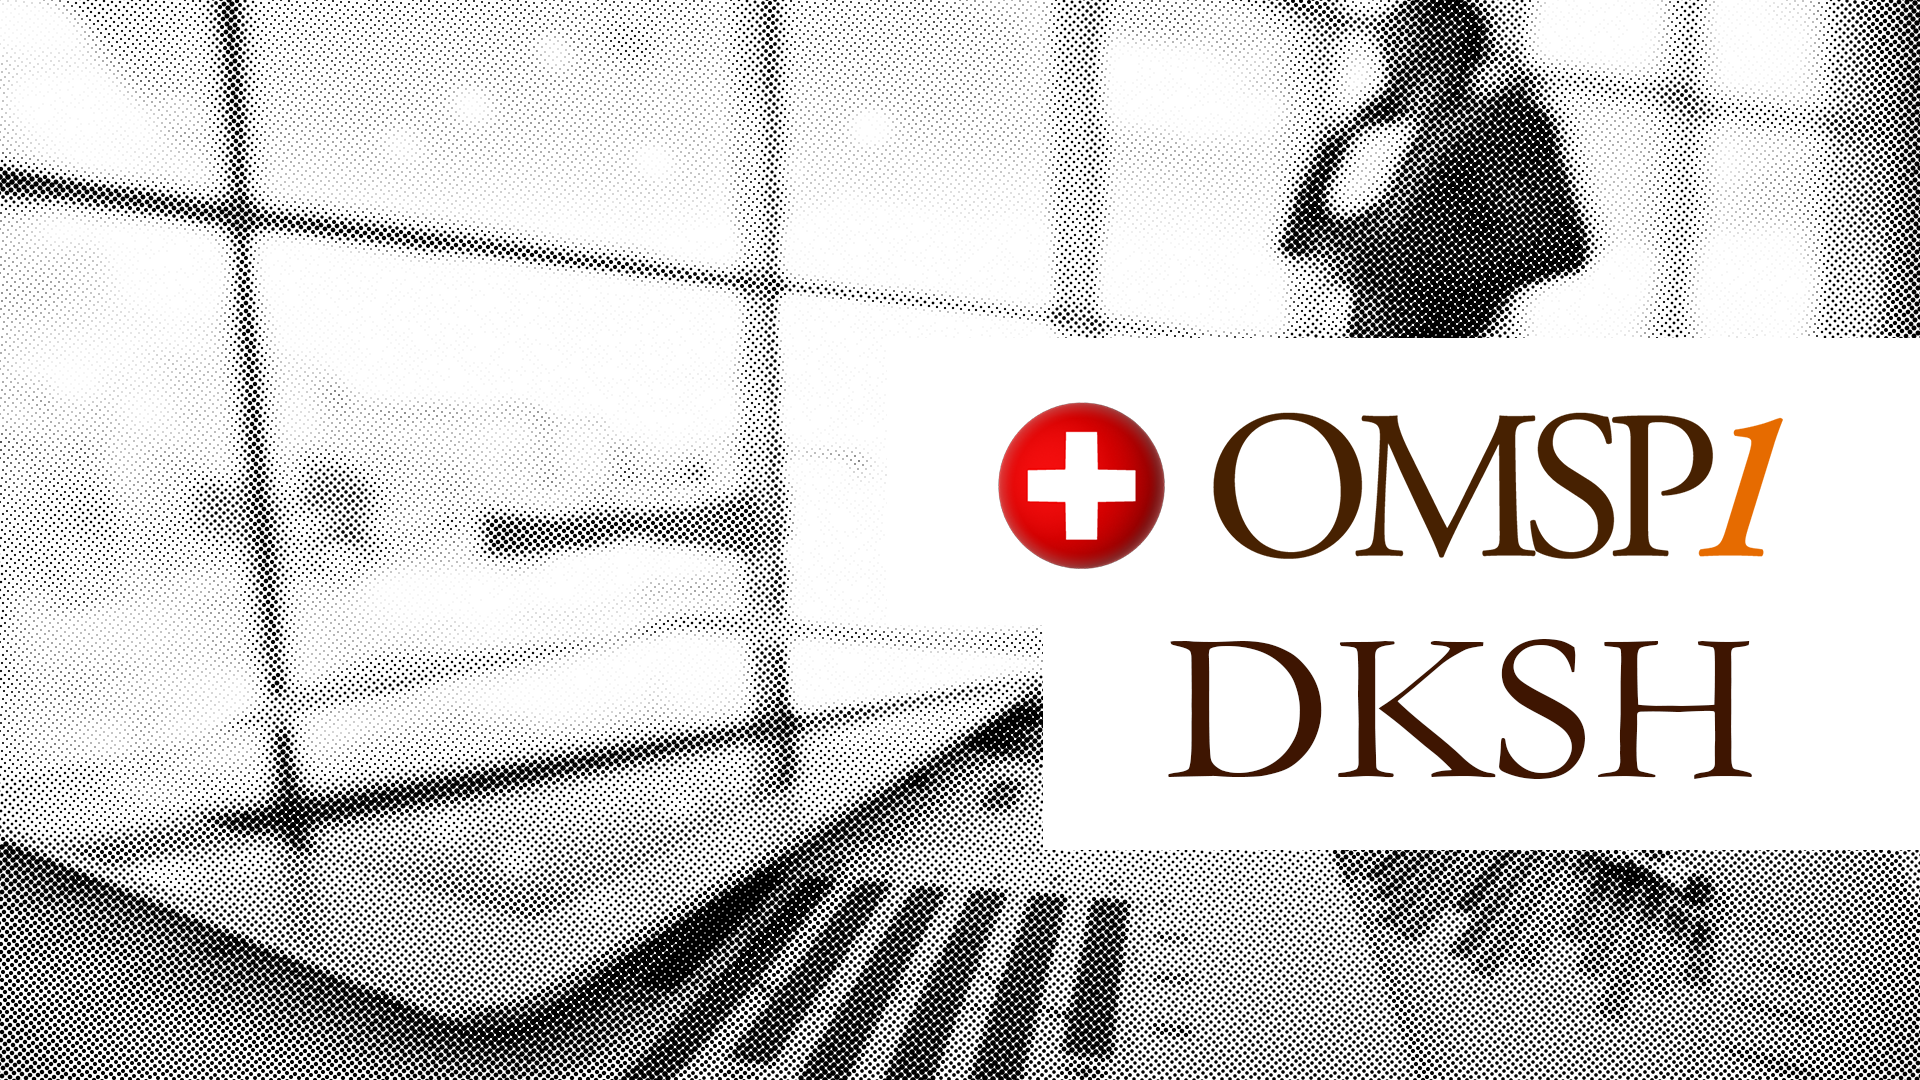 Swiss Market Expansion Services: DKSH